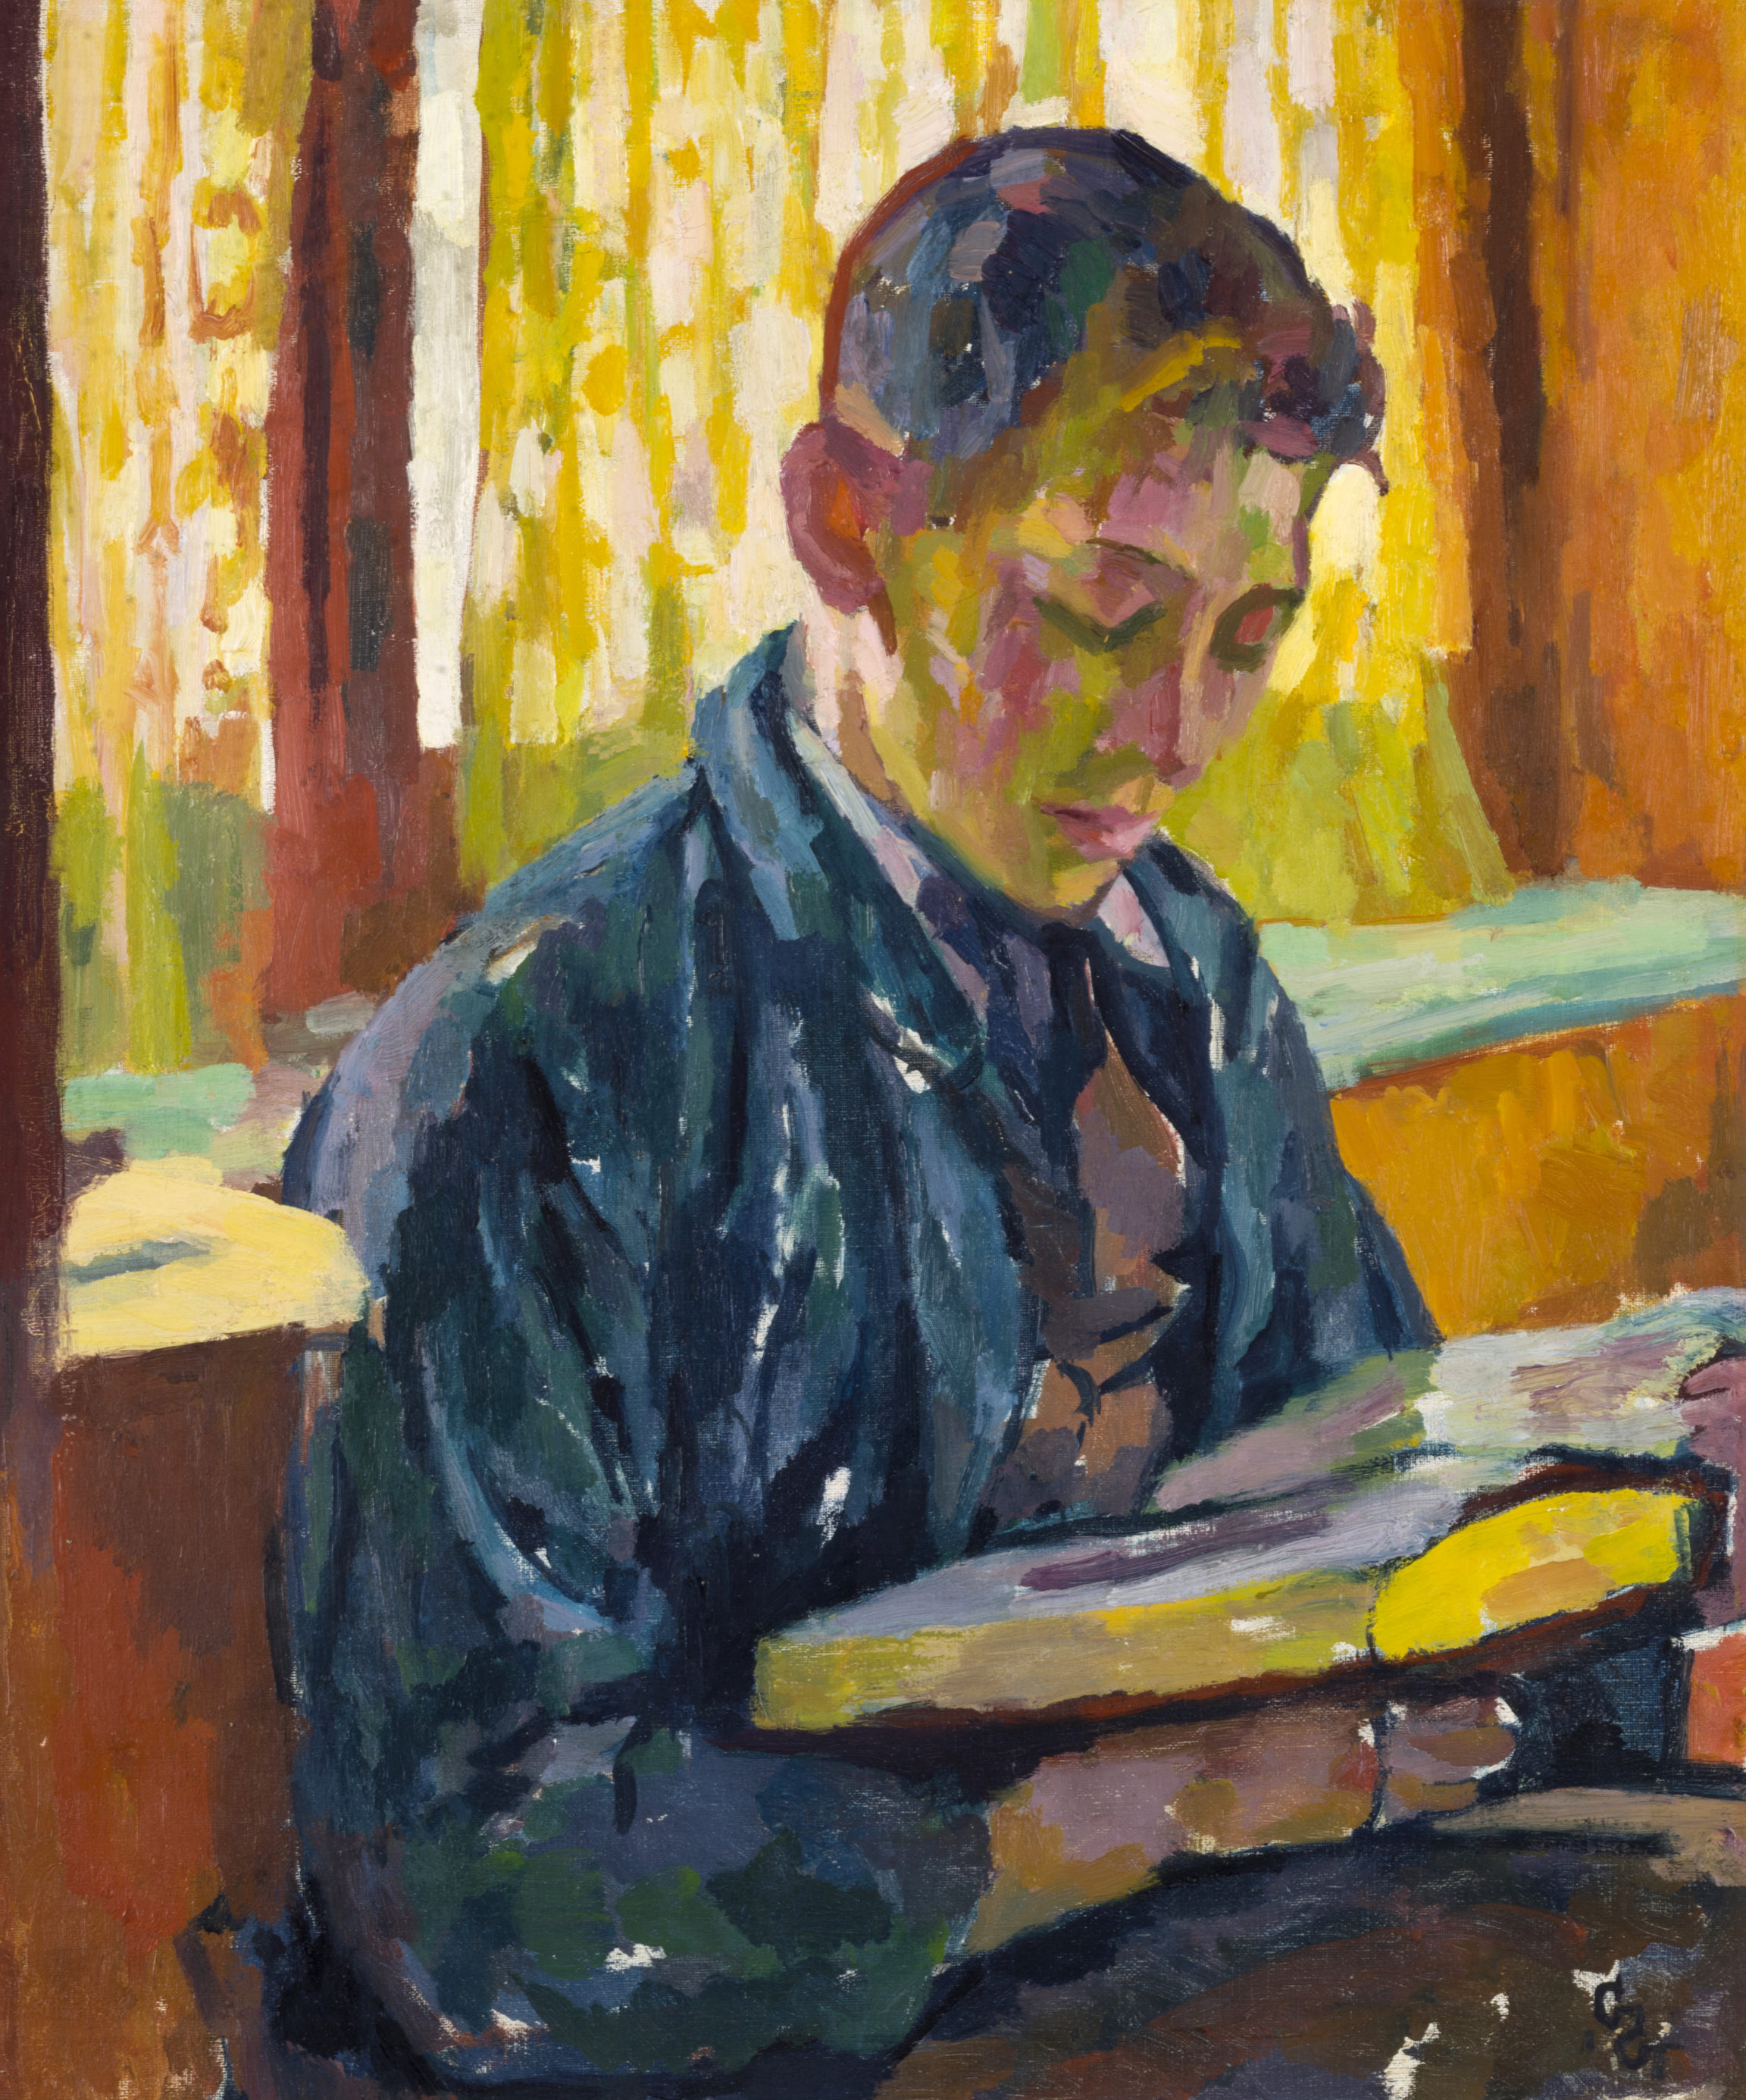 Giovanni Giacometti, Alberto che legge (Alberto Reading), c. 1915